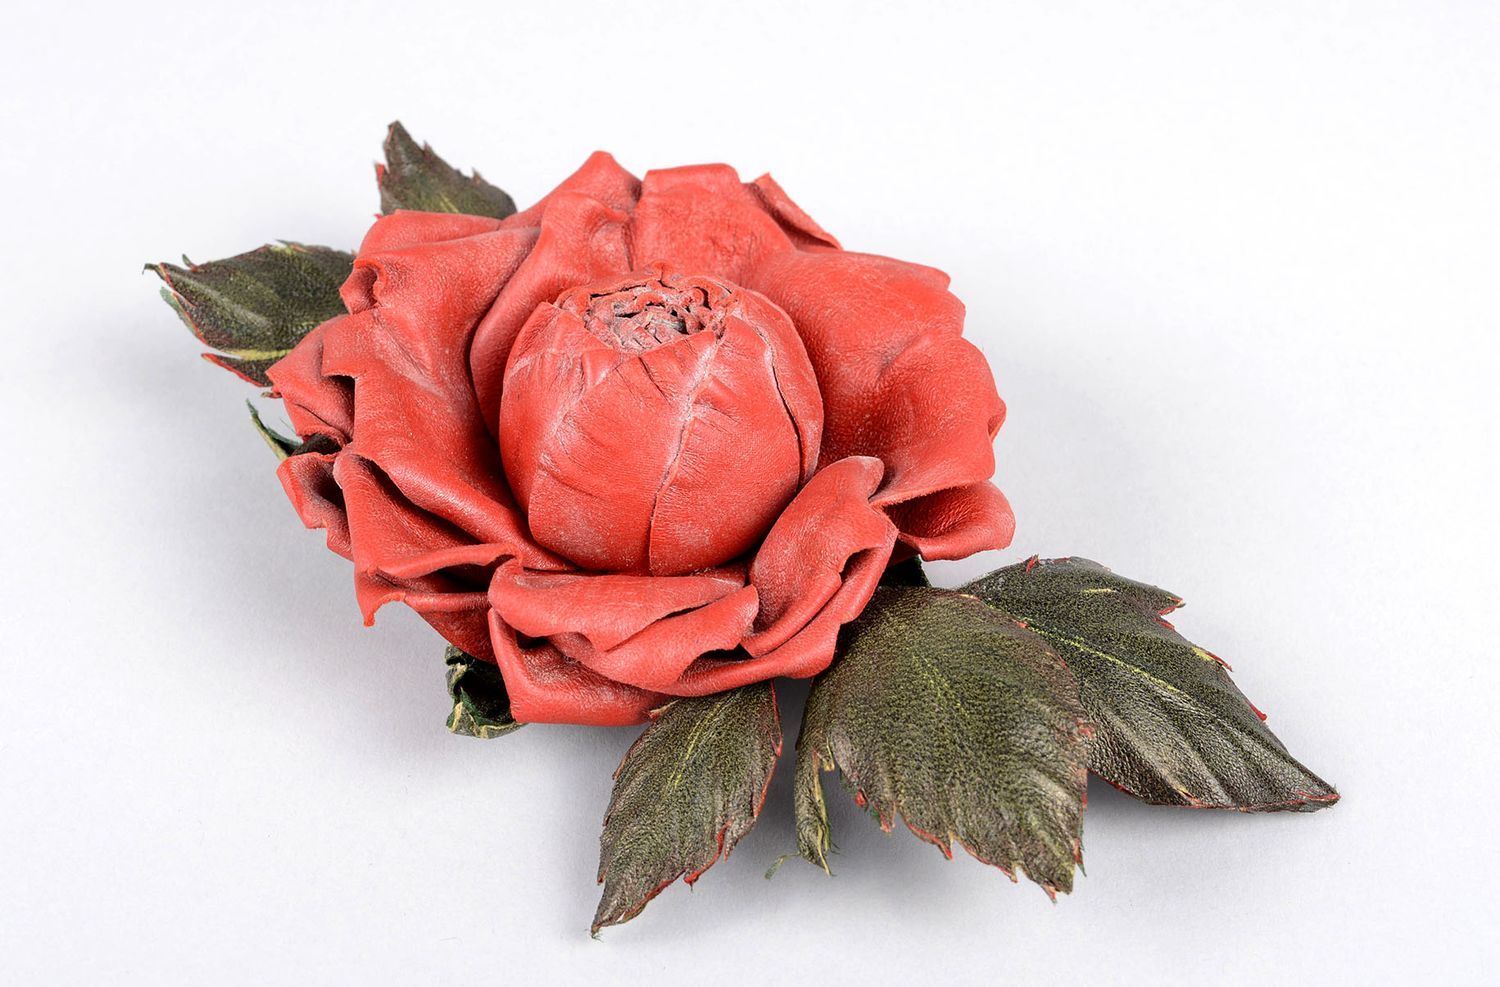 Брошь ручной работы красивая красная брошь-цветок авторское кожаное украшение фото 1